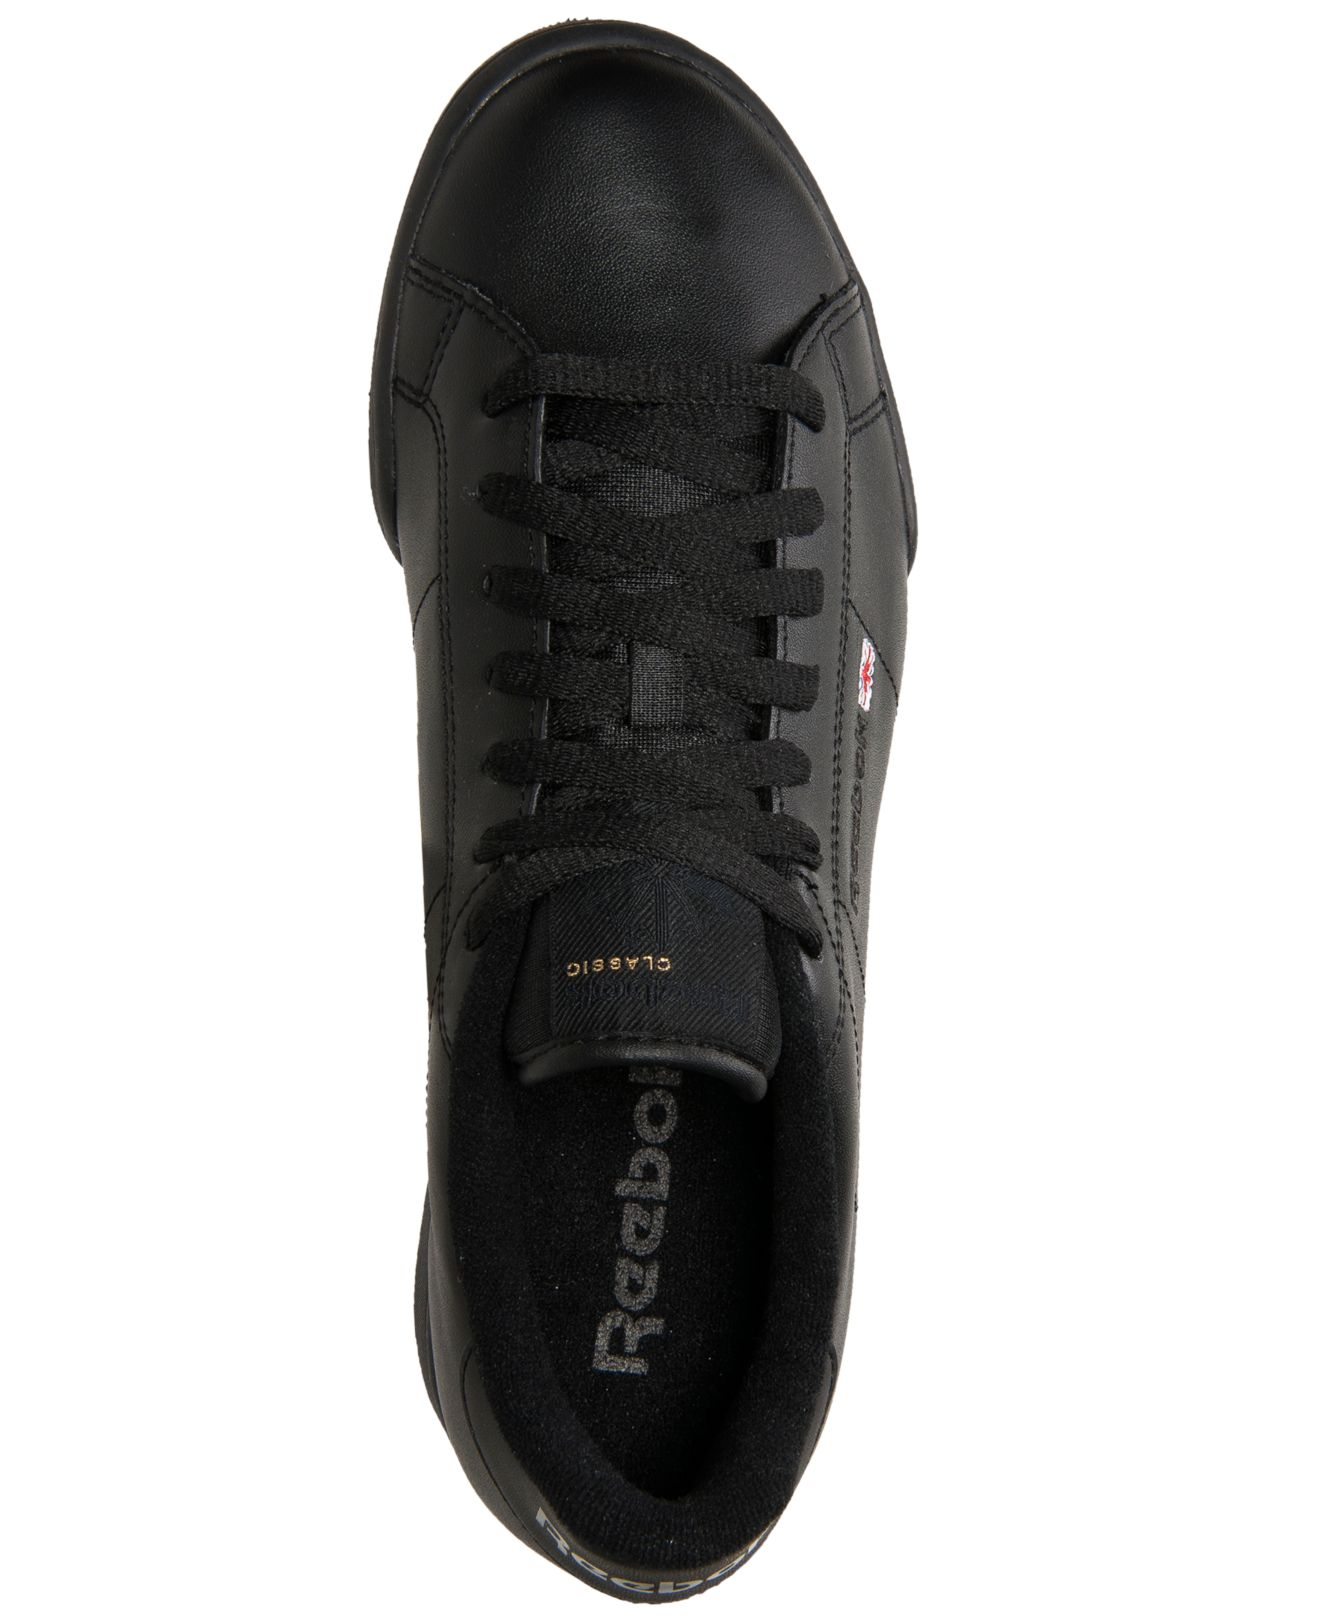 Lyst - Reebok Men'S Npc Ii Casual Sneakers From Finish Line in Black ...